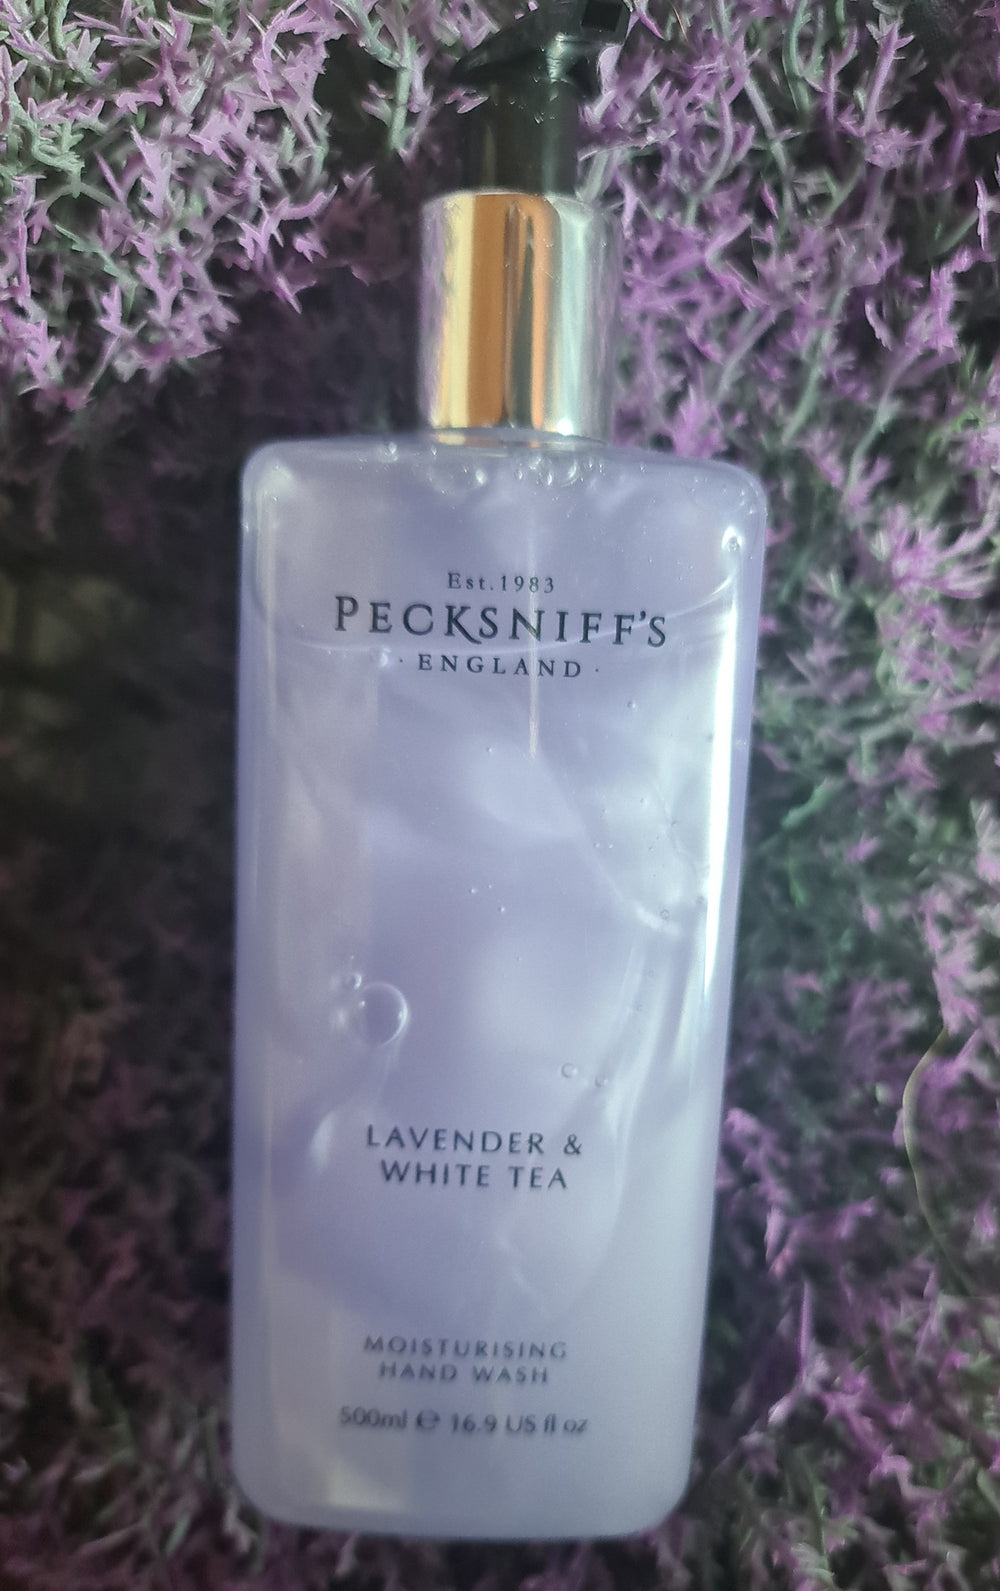 Pecksniff's Lavender & White Tea Luxury Handwash, Flüssigseife 500 ml - British Moments